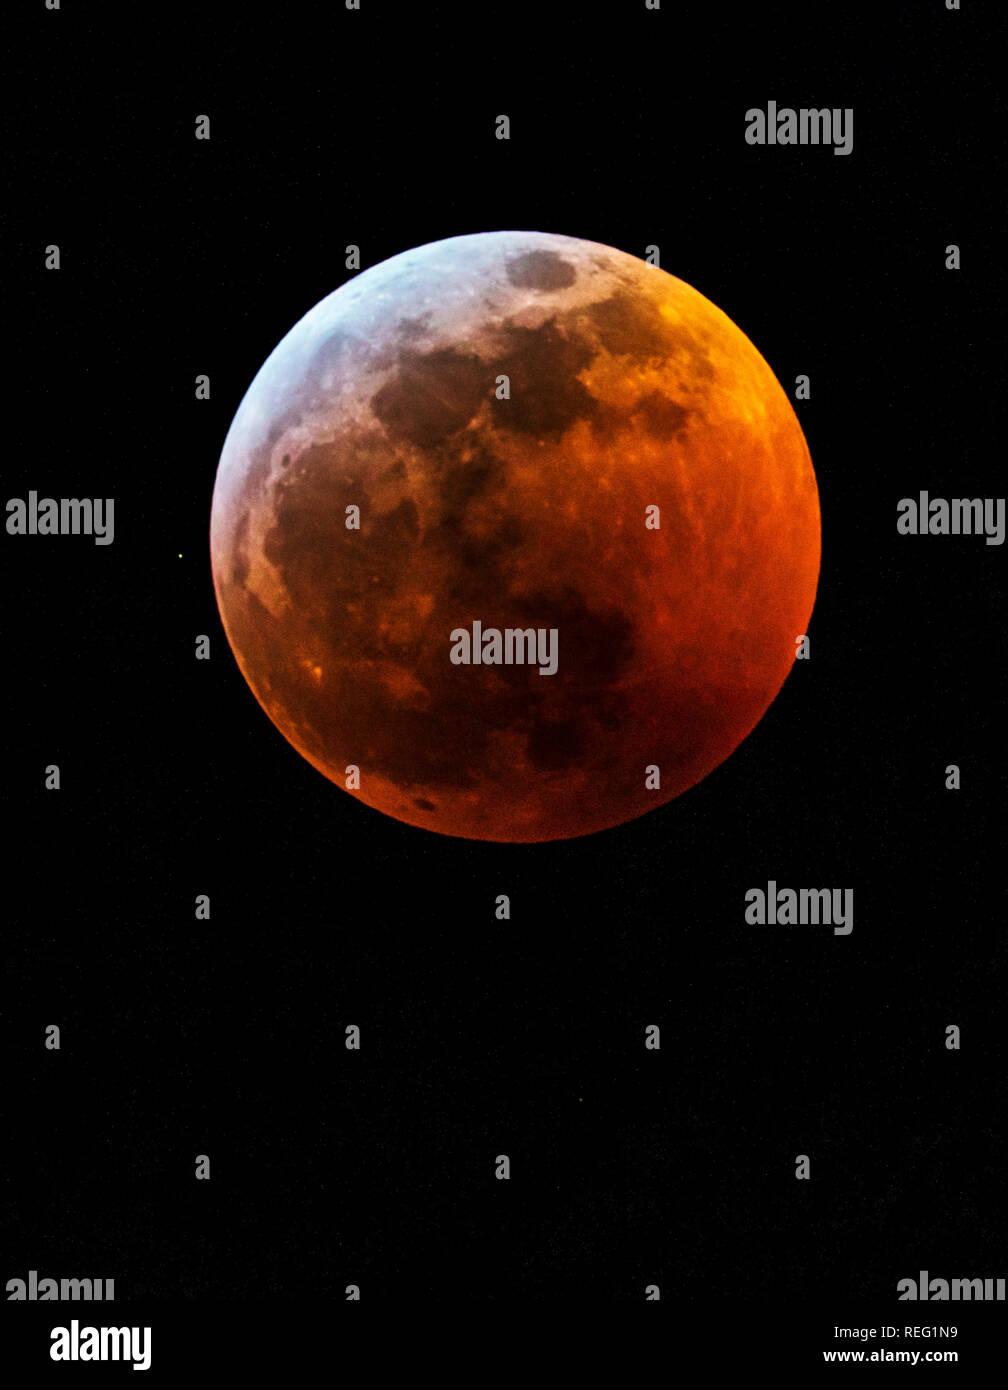 Salida, STATI UNITI D'AMERICA. Xx gen, 2019. Lunar Eclipse, rosso sangue lupo completa supermoon su montagne rocciose; Salida; Colorado; USA Credito: H. Mark Weidman Fotografia/Alamy Live News Foto Stock